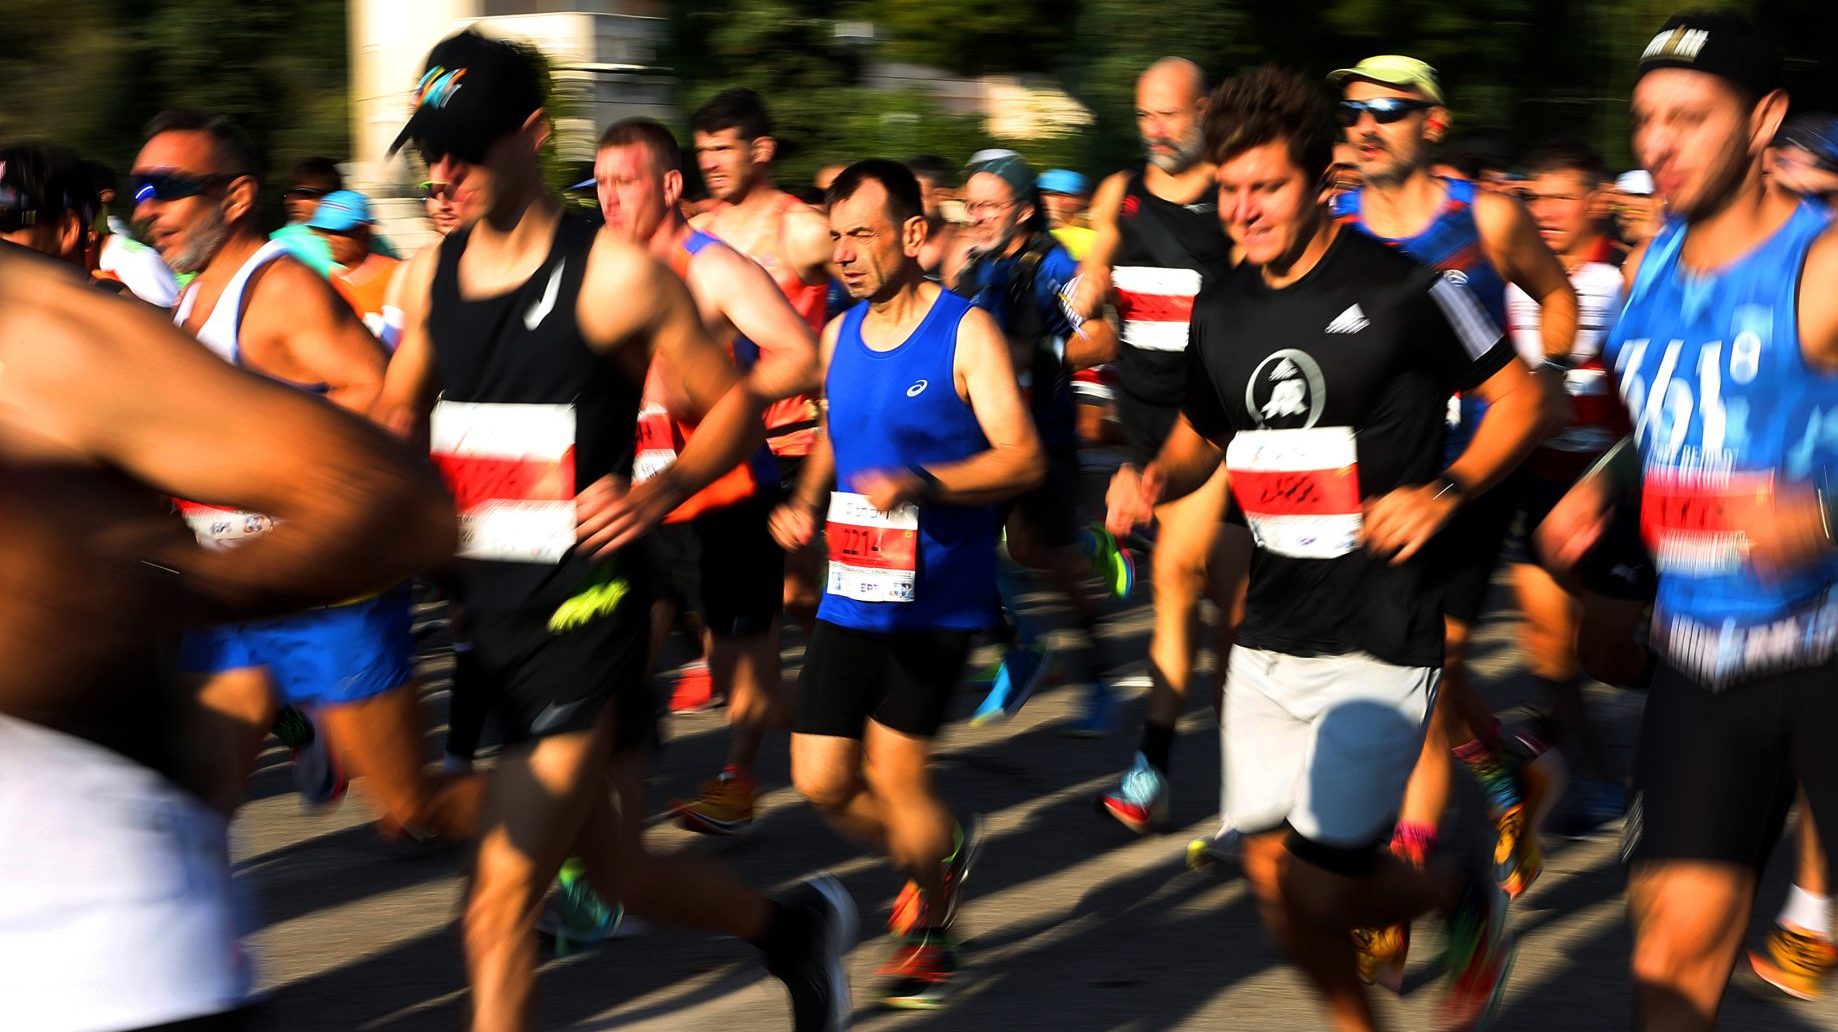 Ovo je maratonac koji trči i ne gasi cigaretu: duvanska industrija je dobila svoje novo sportsko zaštitno lice